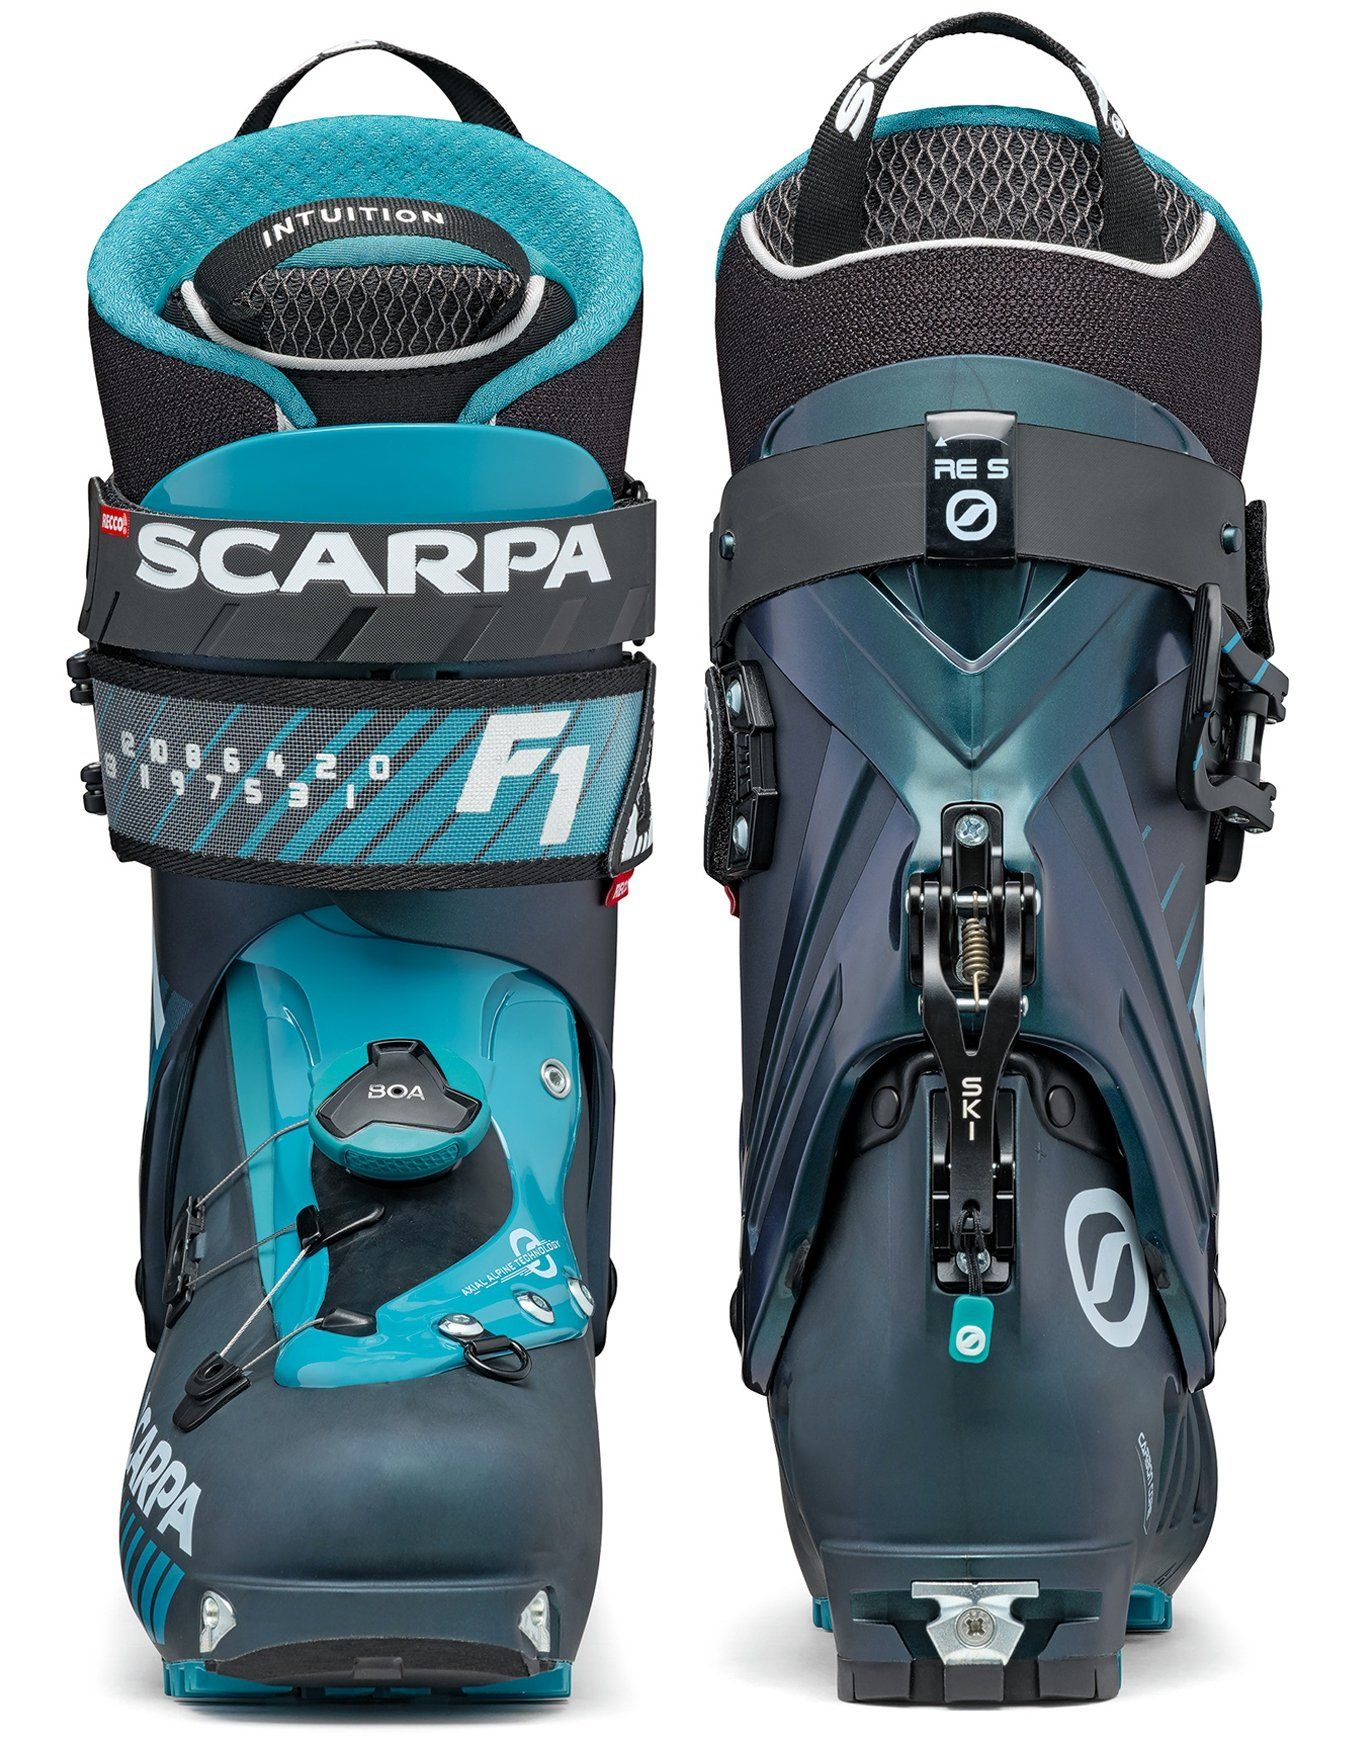 Chaussures de ski de randonnée F1